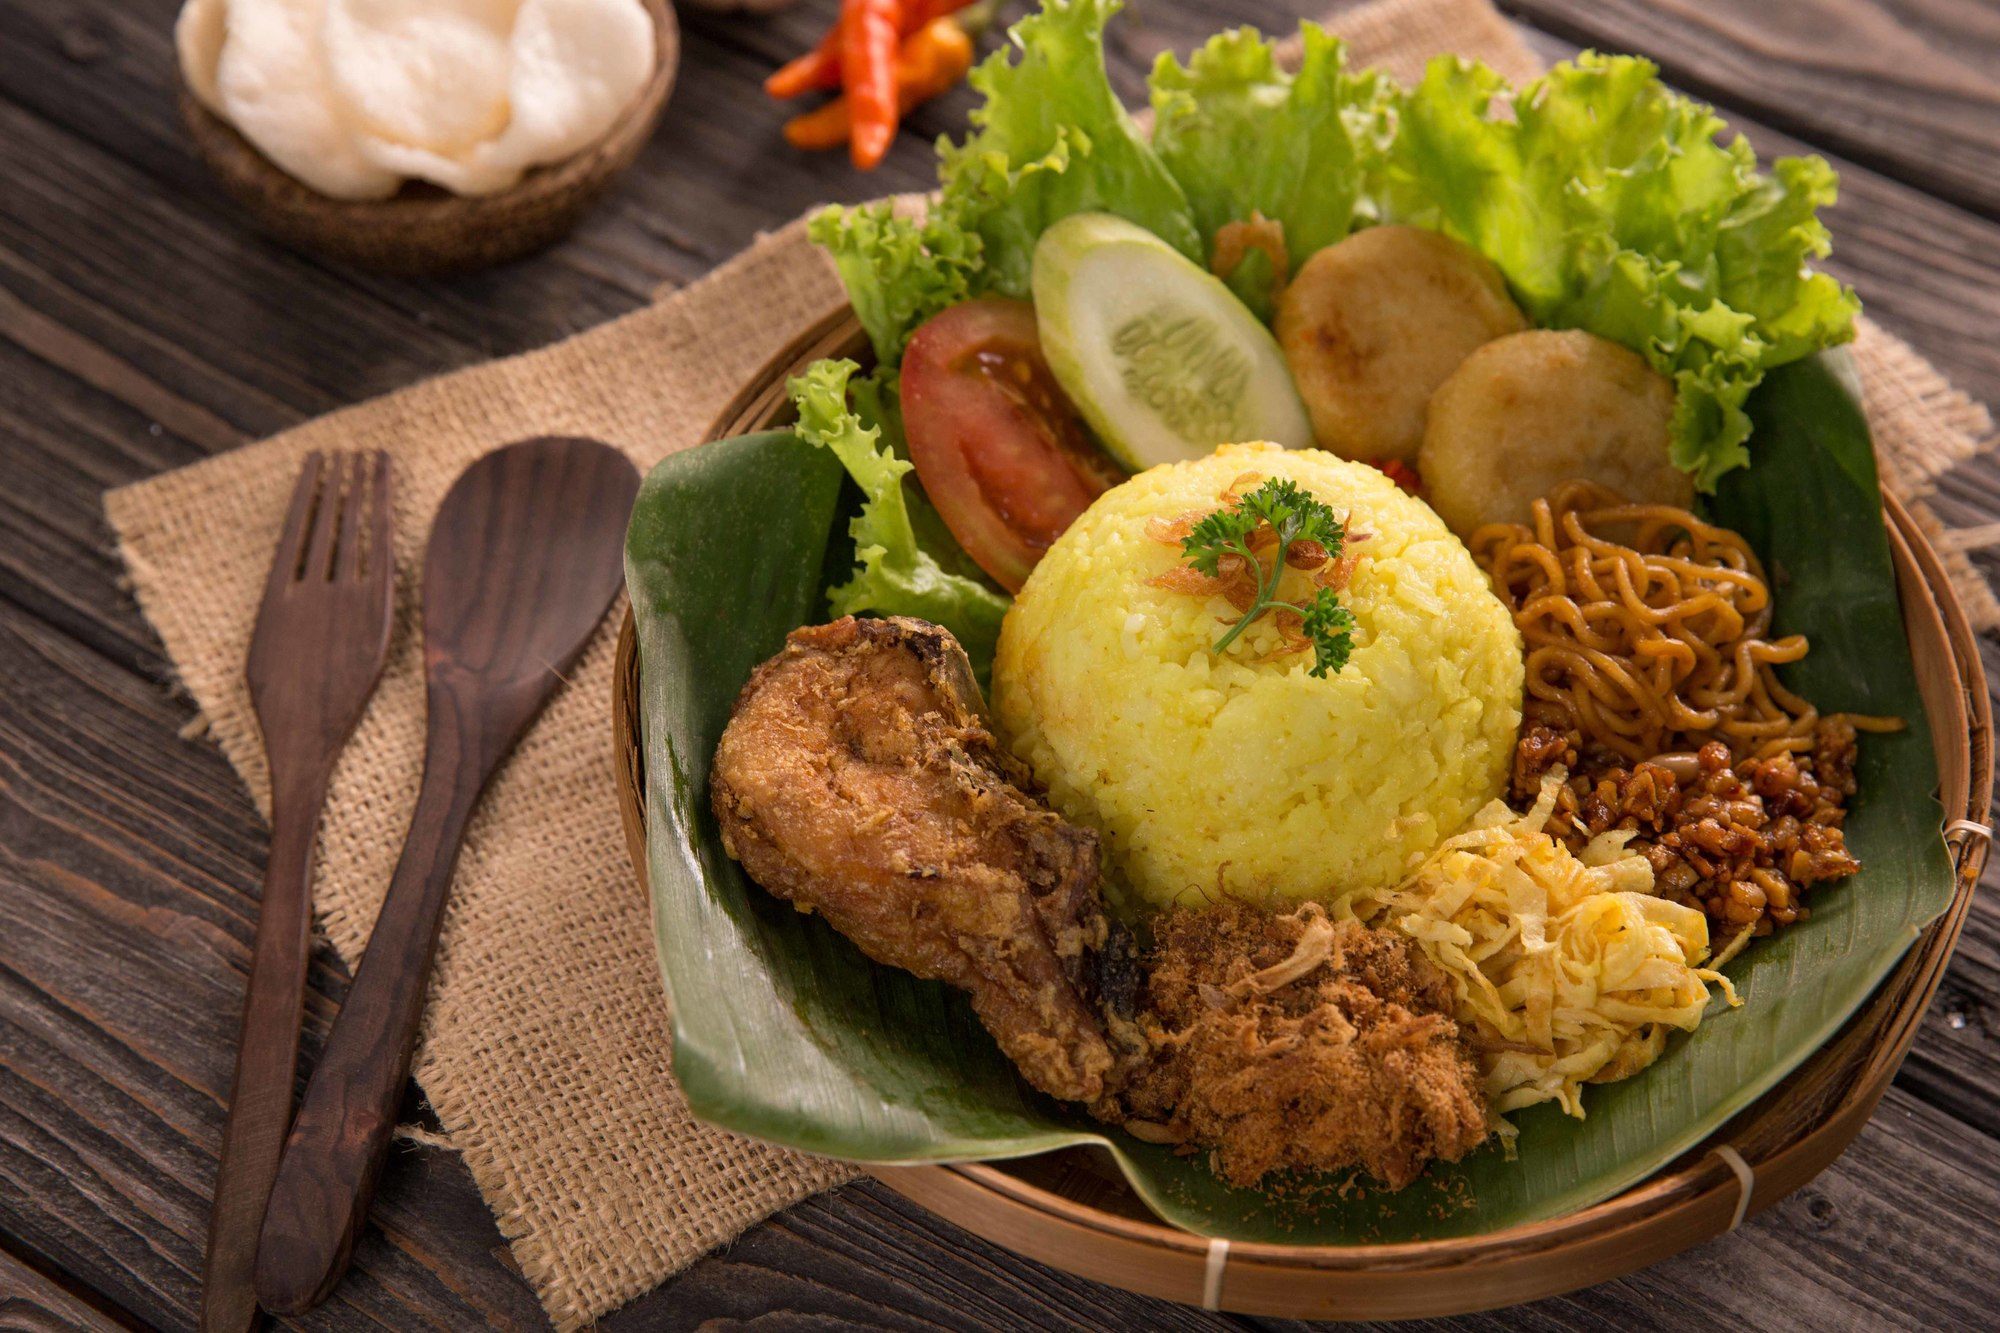 Resep Nasi Kuning dan Ayam Goreng - Masak Apa Hari Ini?